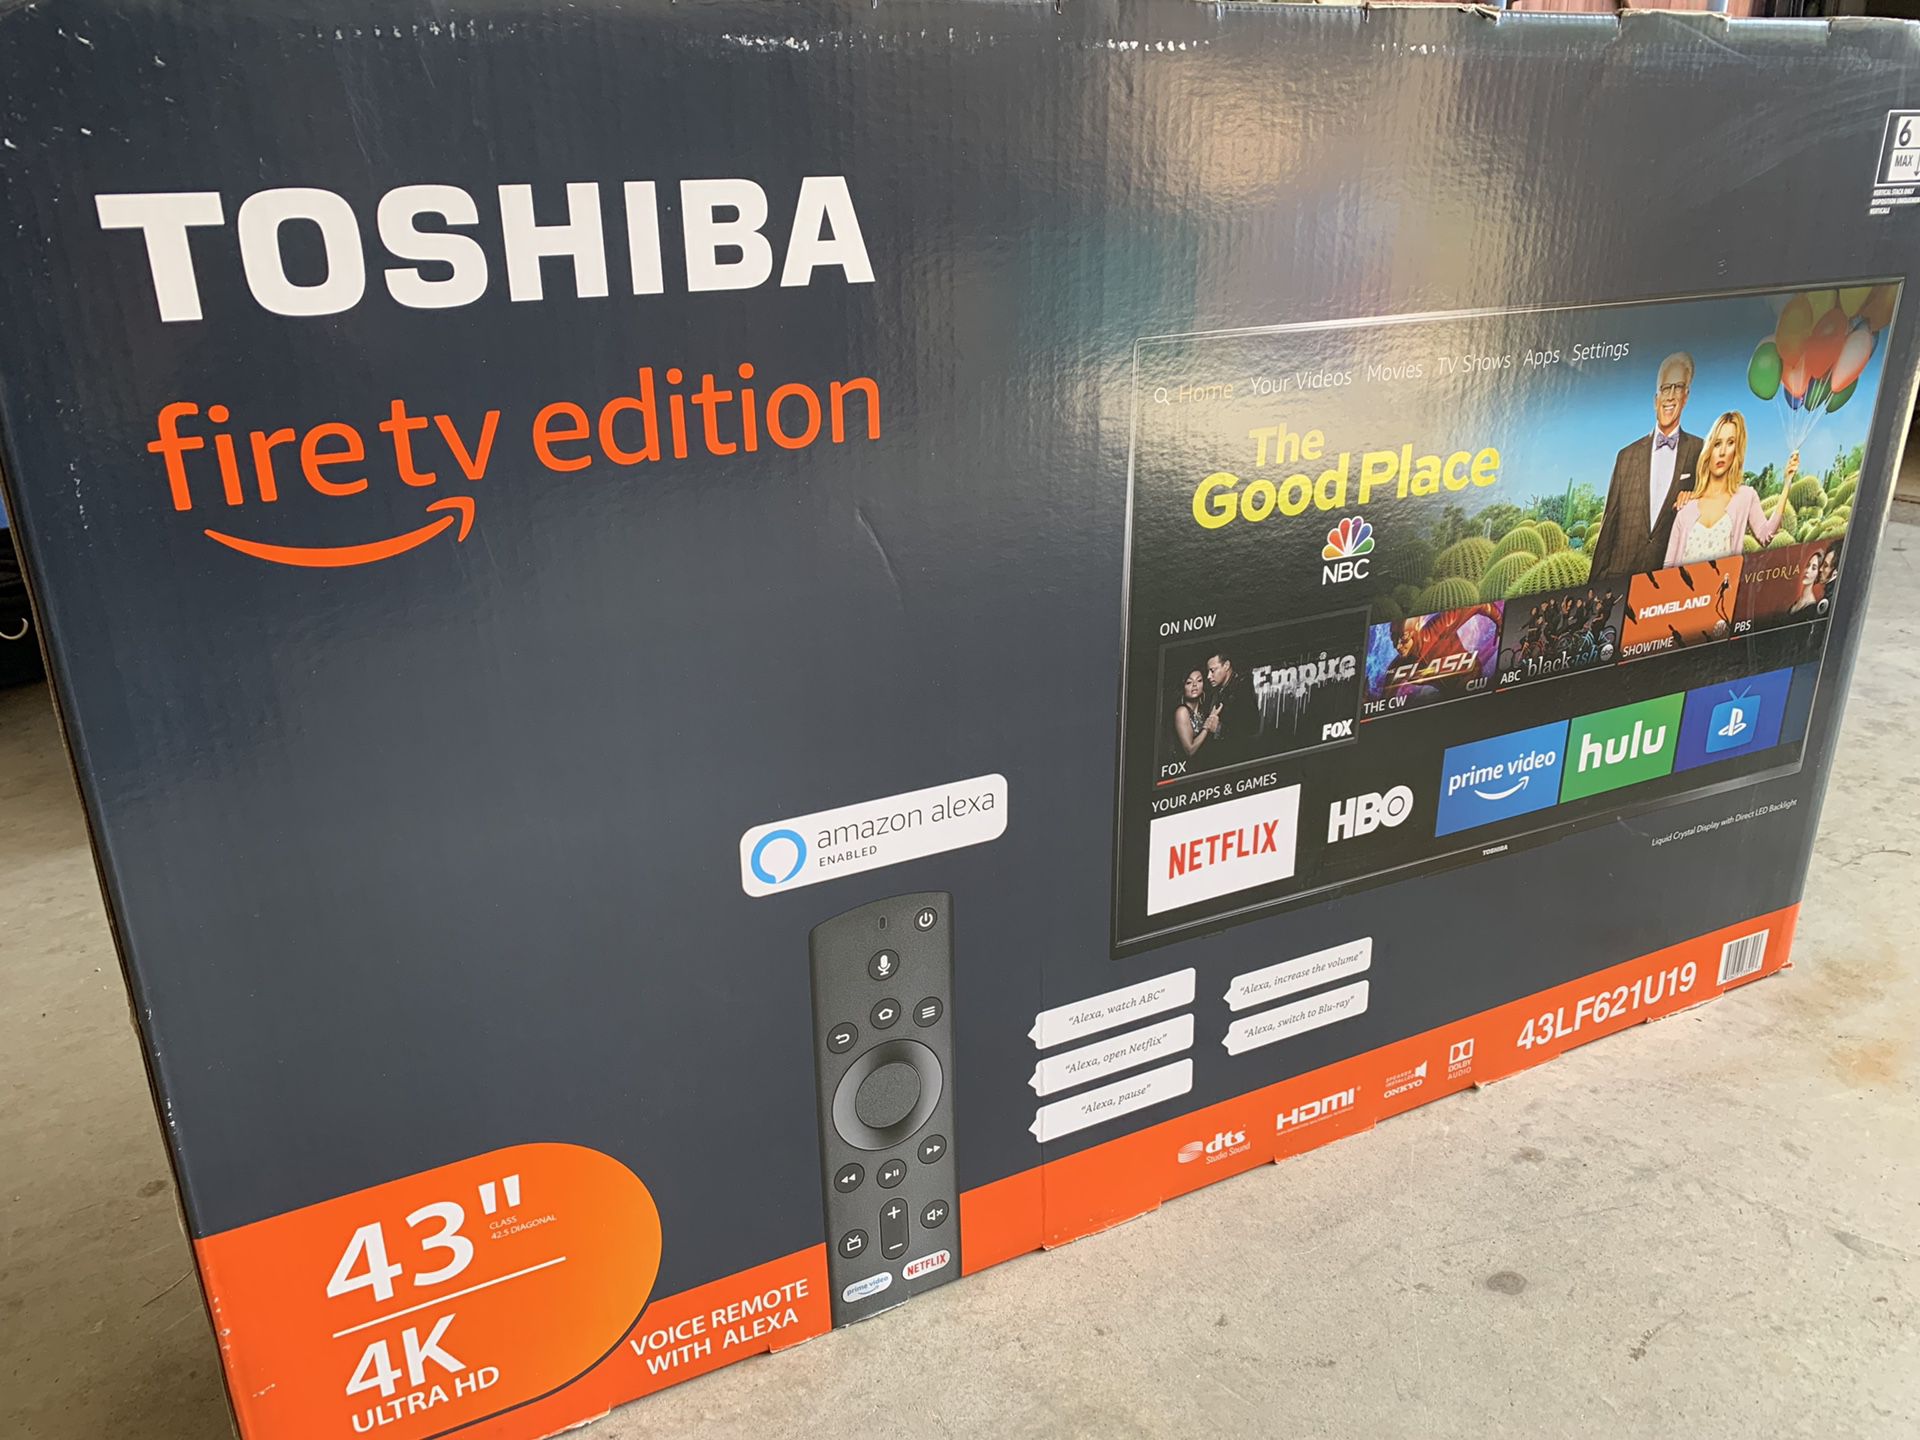 Toshiba smart tv 43” 4k